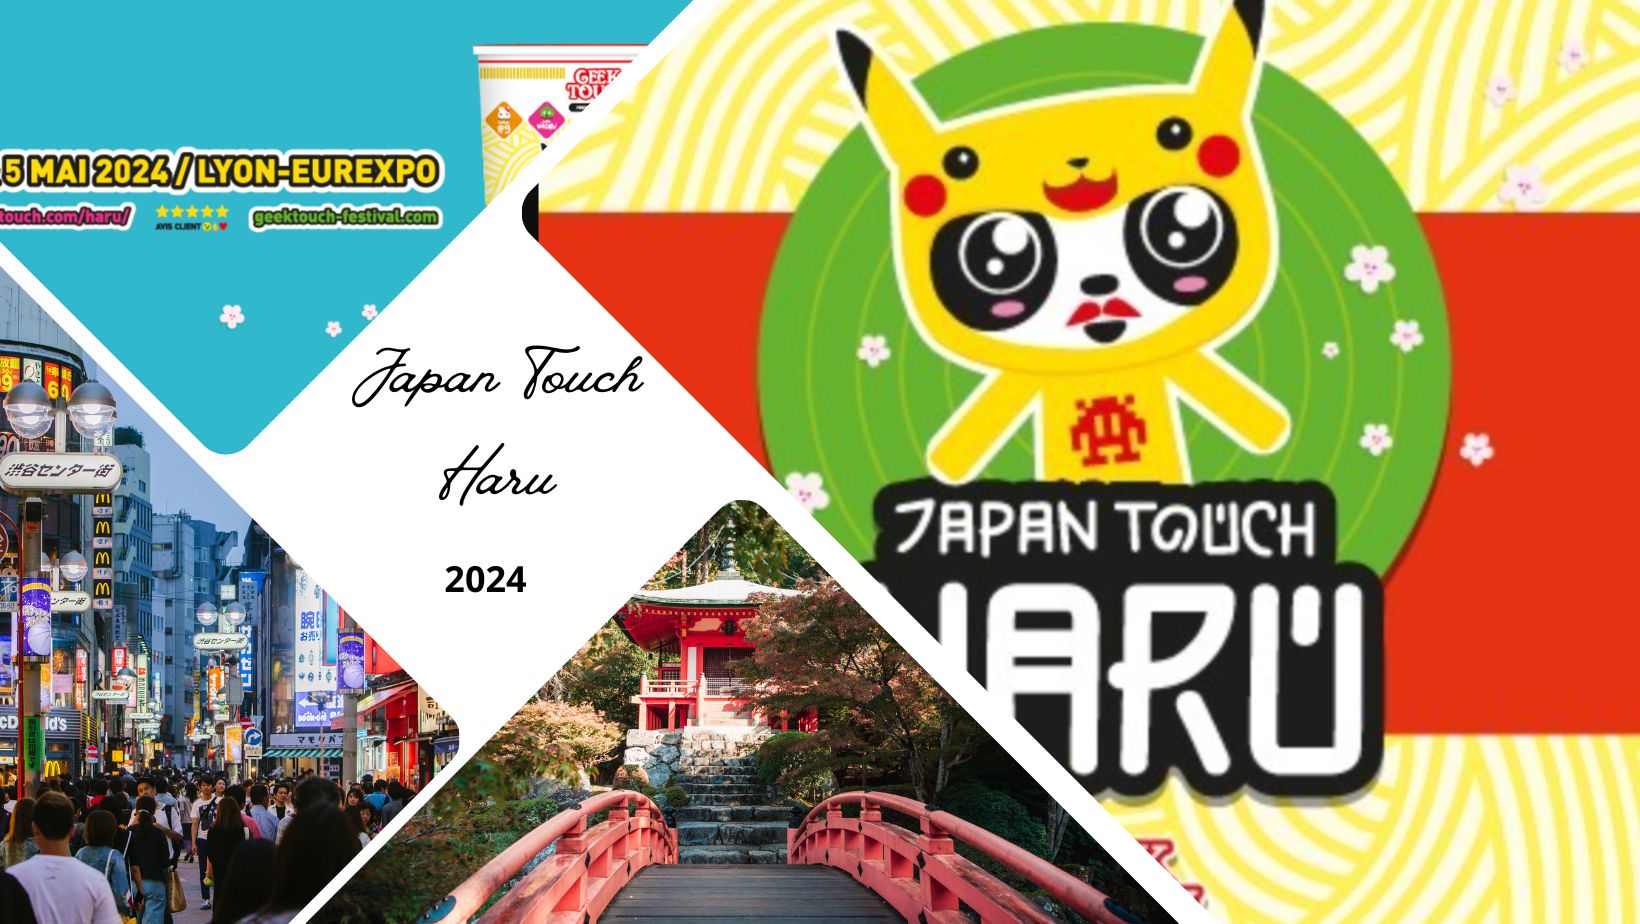 Japan Touch Haru et Geek Touch 2024 à Lyon Eurexpo